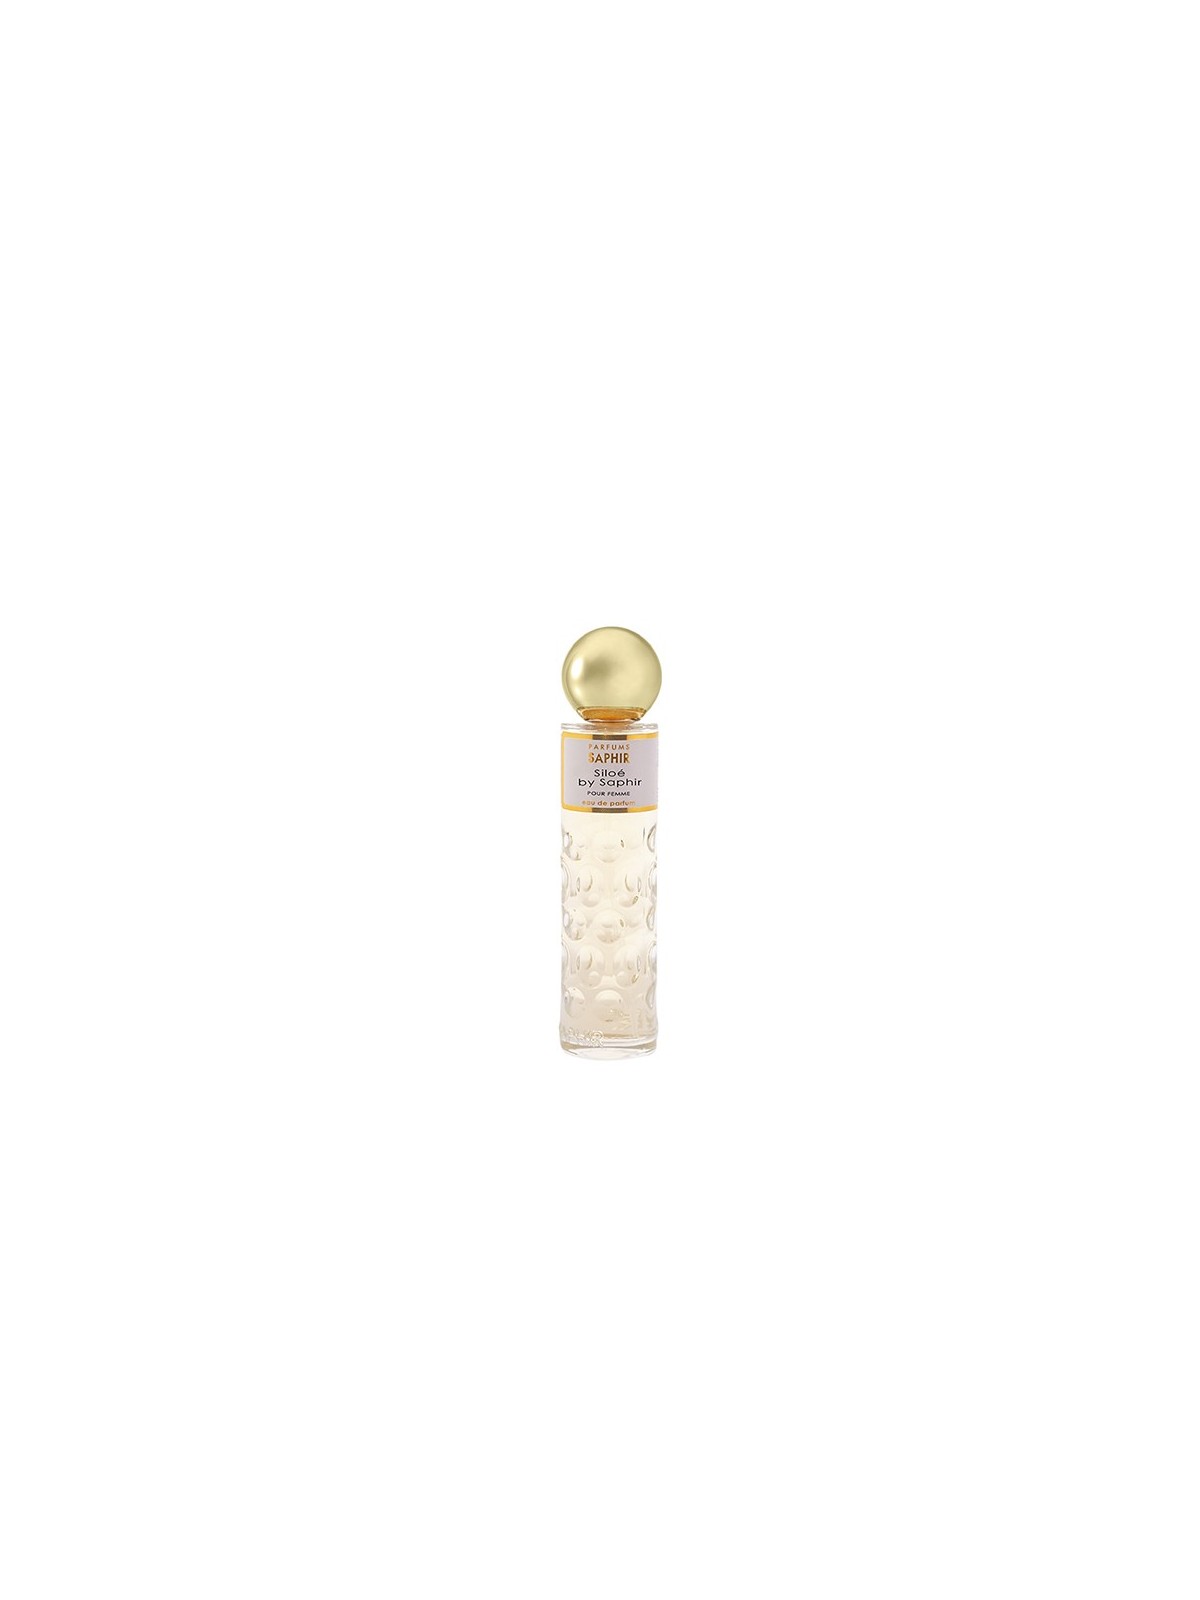 Comprar Perfume SAPHIR Siloé de Saphir 30ml. en Perfumes para mujer por sólo 3,50 € o un precio específico de 3,50 € en Thalie Care